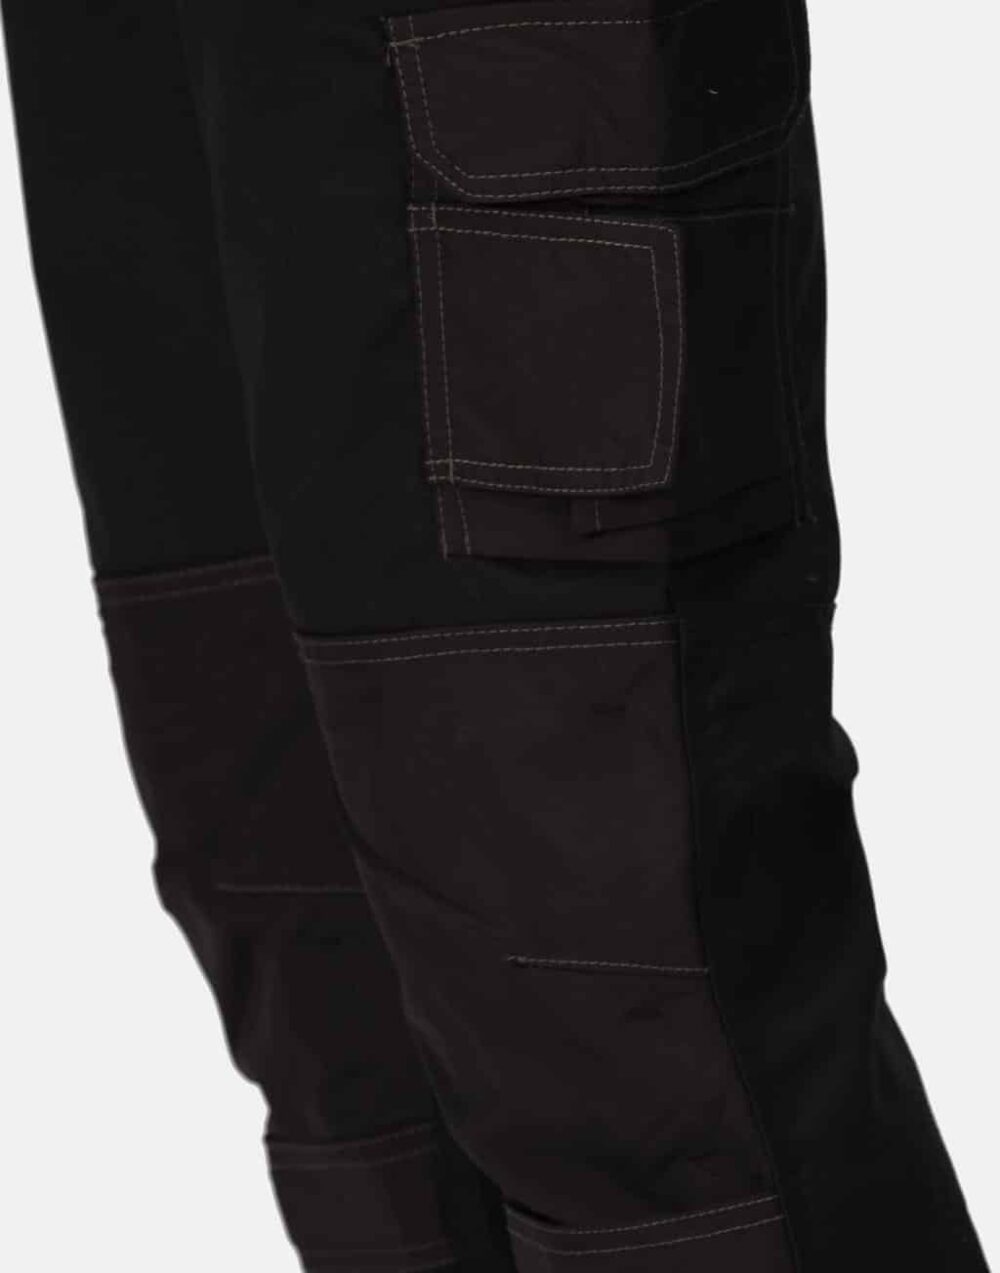 Hardware Holster Trouser (Short)